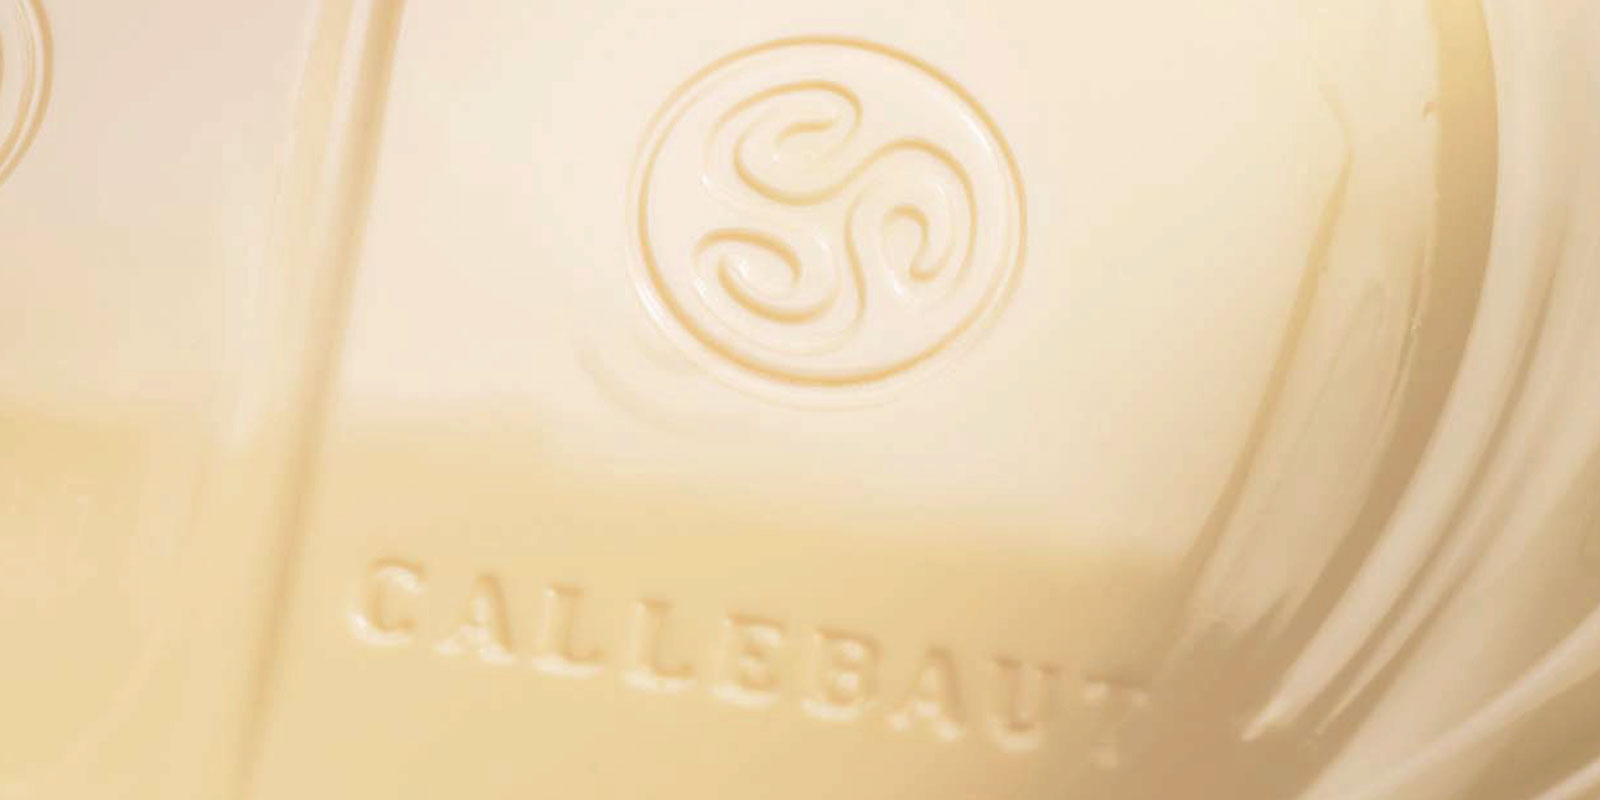 Chocolats blancs de Callebaut Le chocolat blanc est le resultat du melange de beurre de cacao, de lait en poudre et de sucre. Le rapport de melange de ces ingredients - par exemple la vanilline, la vanille ou la lecithine - determine le gout du produit final.